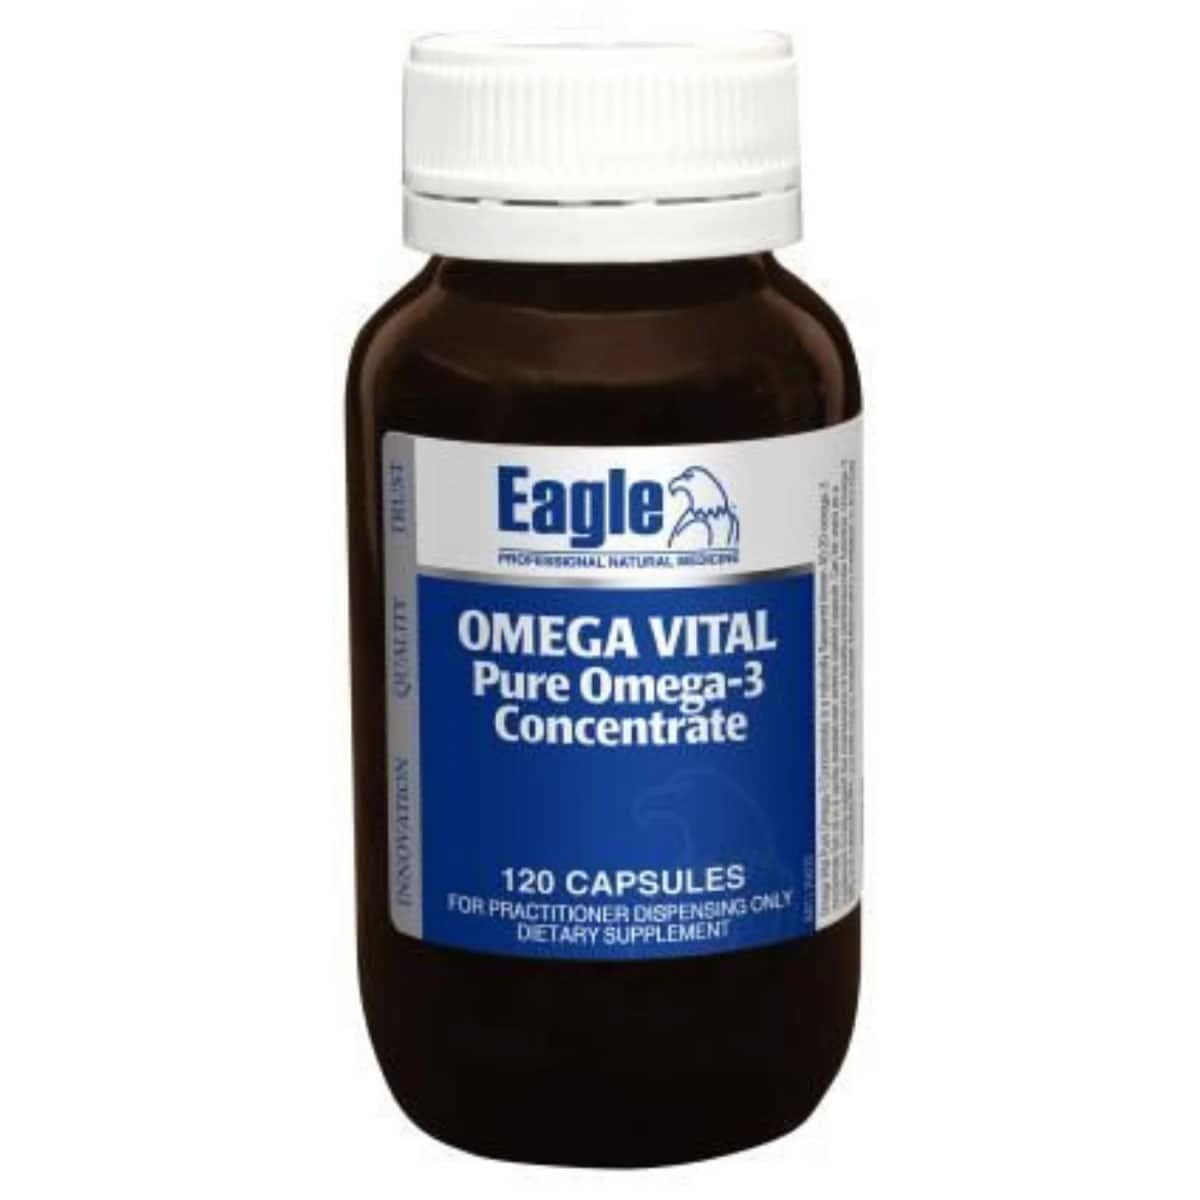 Eagle Omega Vital Pure Omega 3 Concentrate 120 Capsules